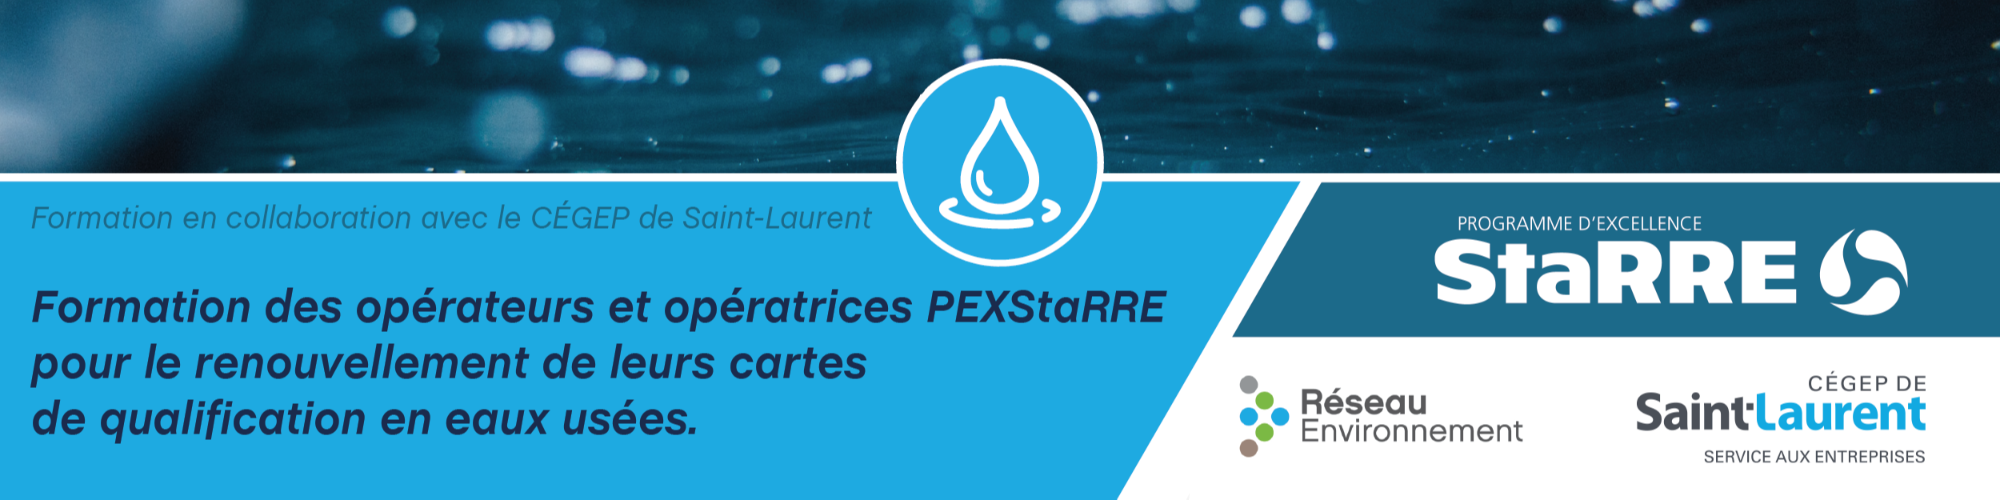 Formation des opératrices et opérateurs PEXStarre pour le renouvellement de leurs cartes de qualification en eaux usées - 2ème cohorte